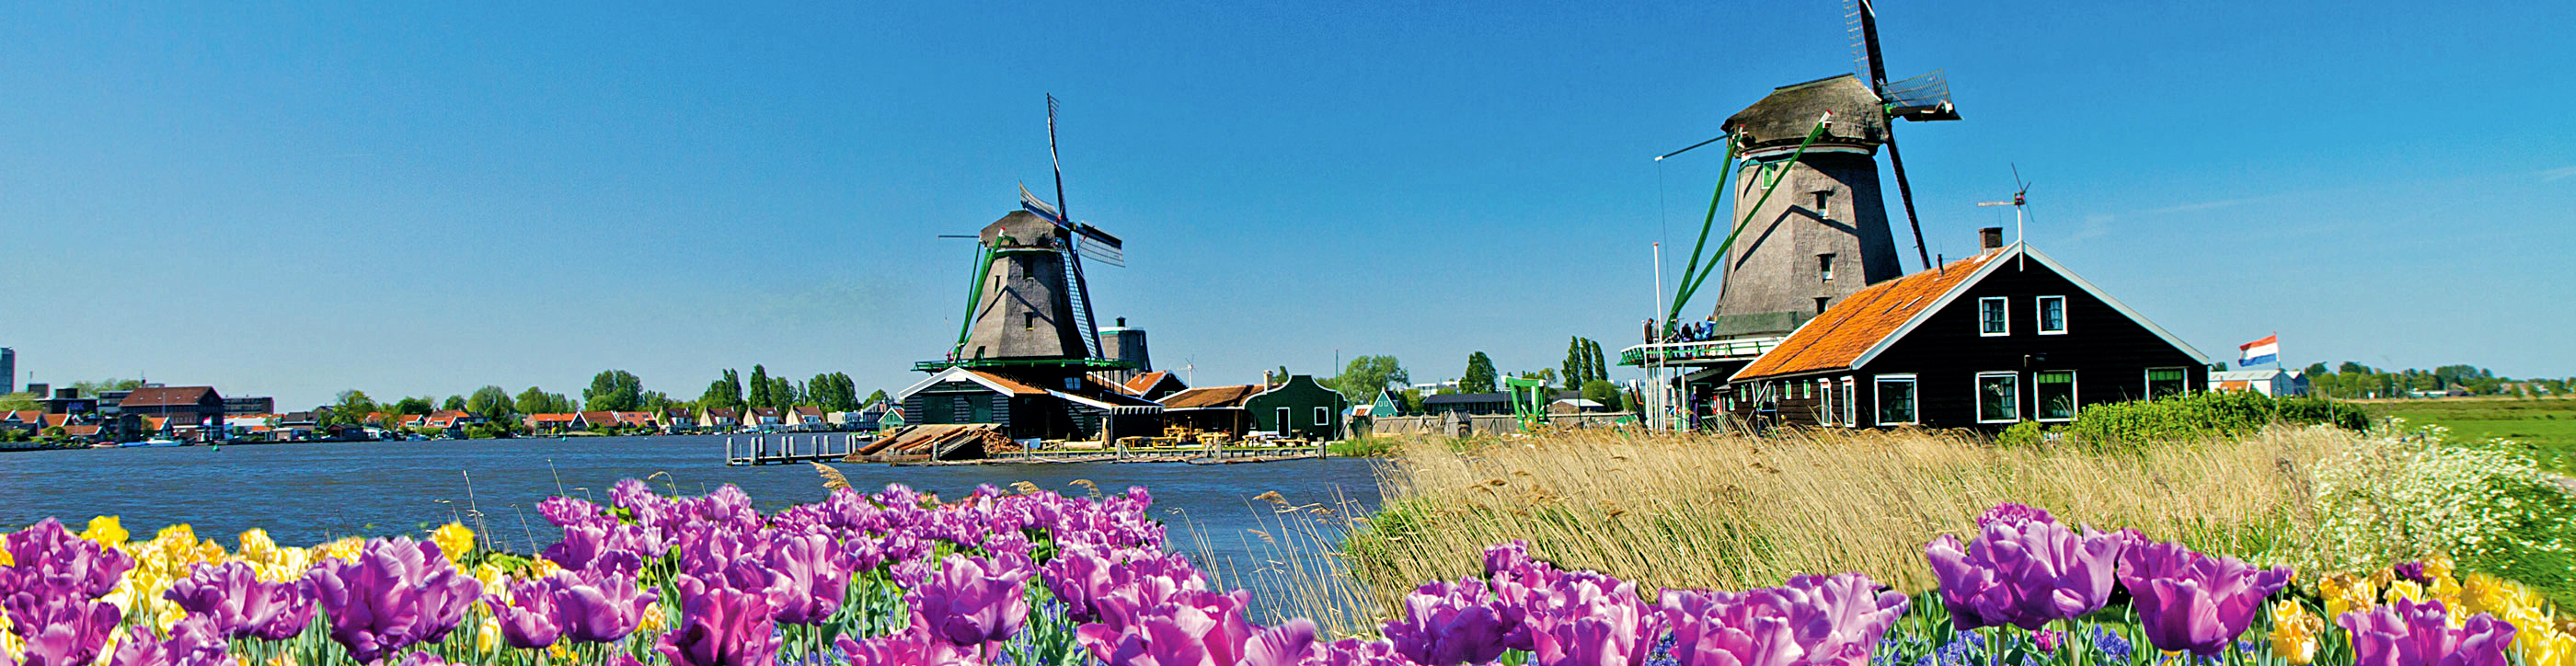 Tulips & Windmills 2019 | Europe River Cruise | Uniworld River Cruises